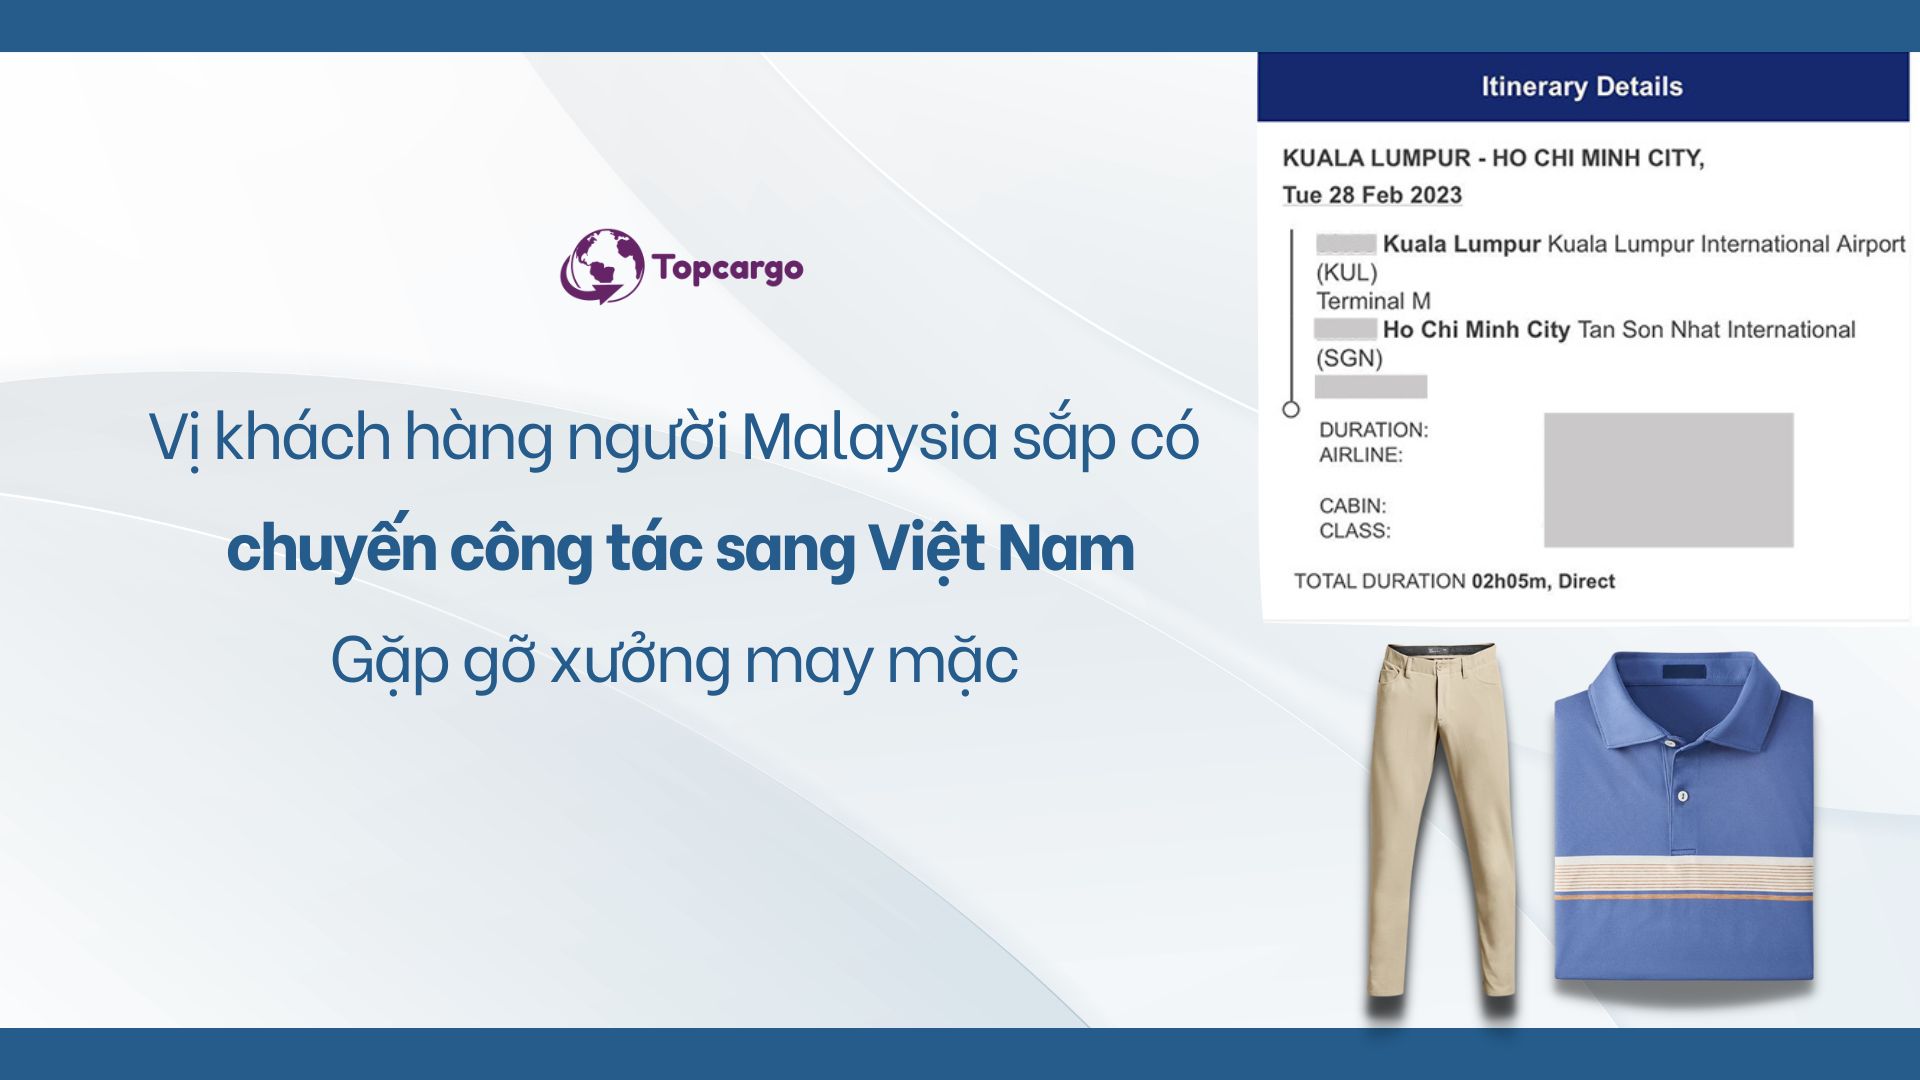 Top Cargo sắp đón đối tác từ Malaysia sang Việt Nam tìm xưởng may mặc chuyên sản xuất các mặt hàng quần, áo thể thao. 